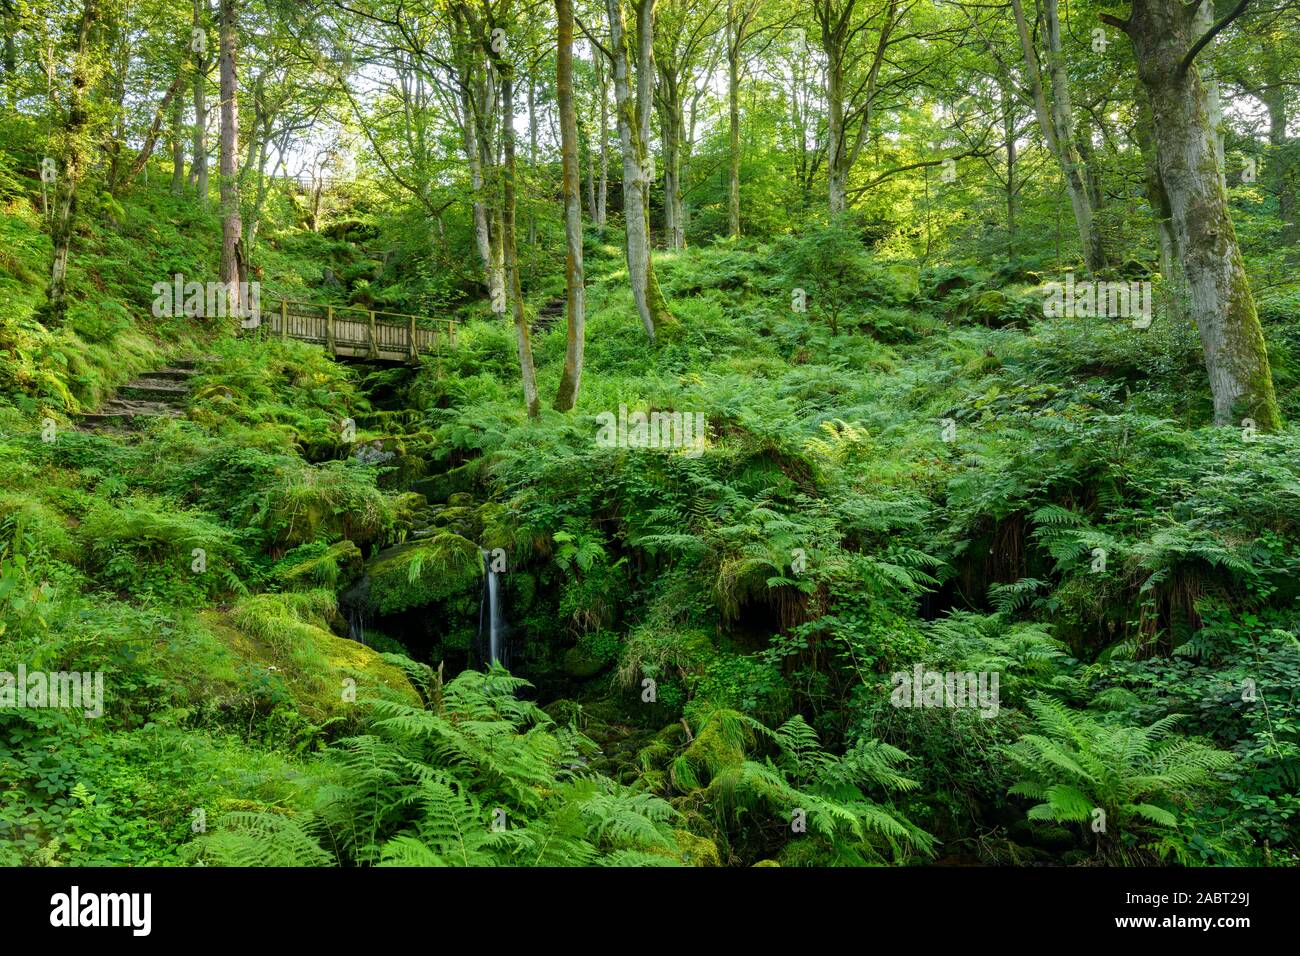 Heber's Ghyll (scenic verdi boschi in ripido orrido roccioso, flusso che scorre verso il basso e il percorso che conduce al ponte di legno) - Ilkley, West Yorkshire, Inghilterra, Regno Unito. Foto Stock